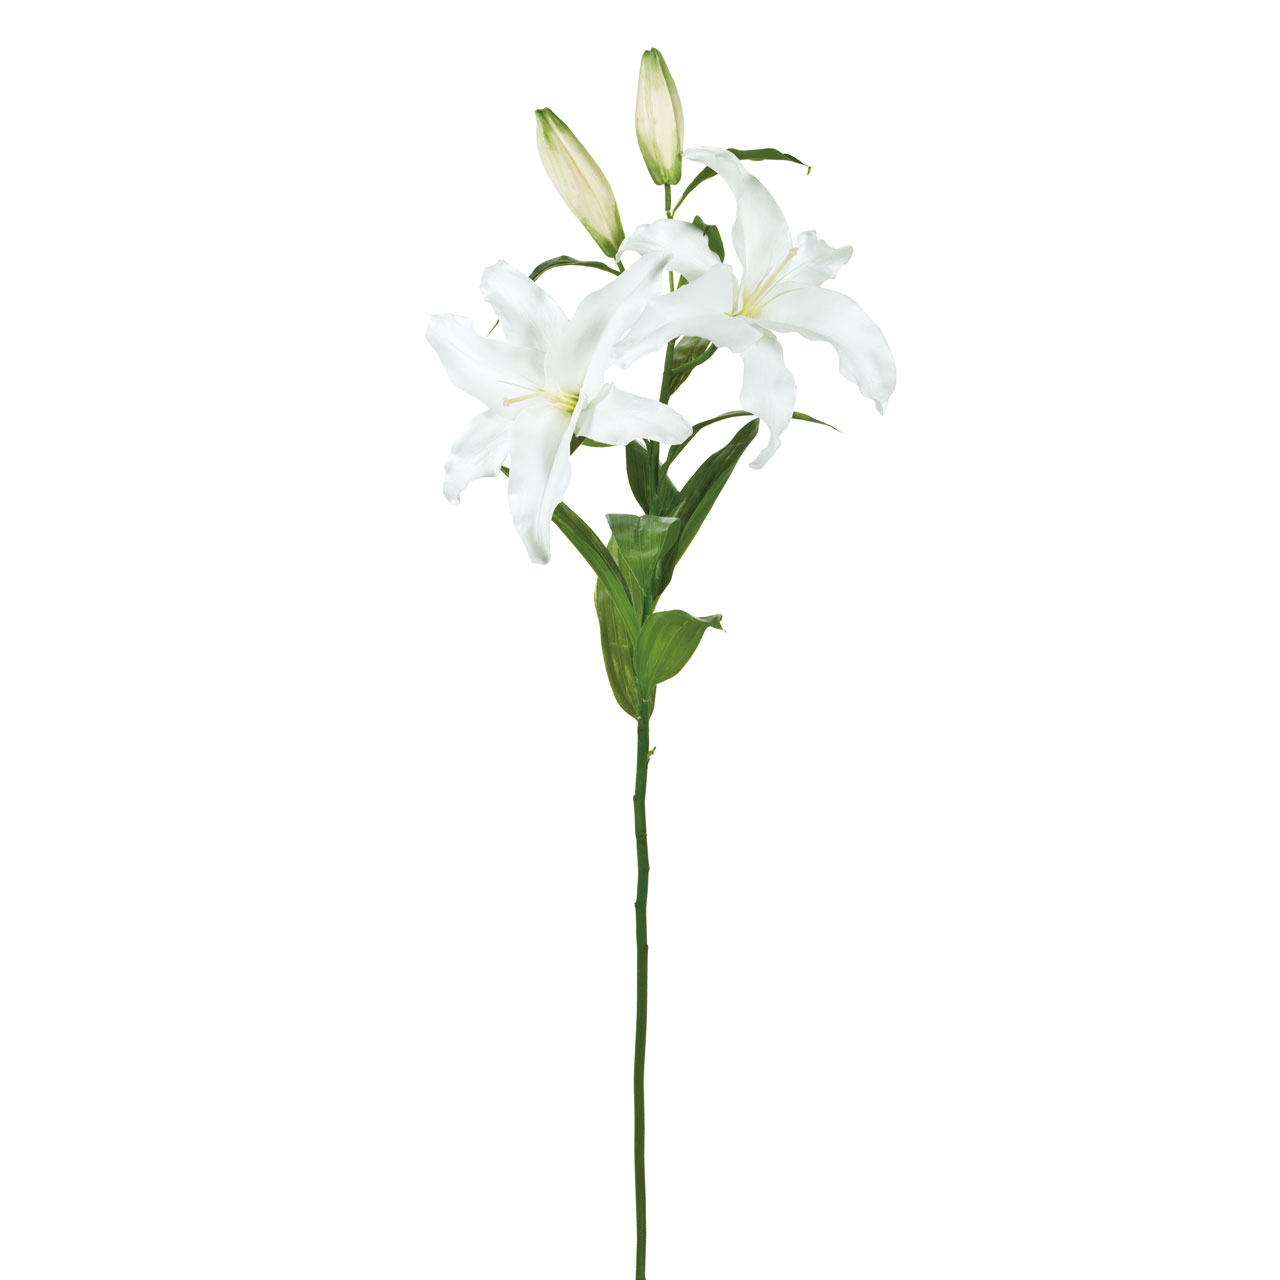 マイフラ 通販 Winward オードリー カサブランカ 2輪咲き ホワイト アーティフィシャルフラワー 造花 Fw ユリ 花径 約24 全長 約97cm ホワイト Magiq アーティフィシャルフラワー 造花 全国にmagiq 花器 花資材などをお届けします